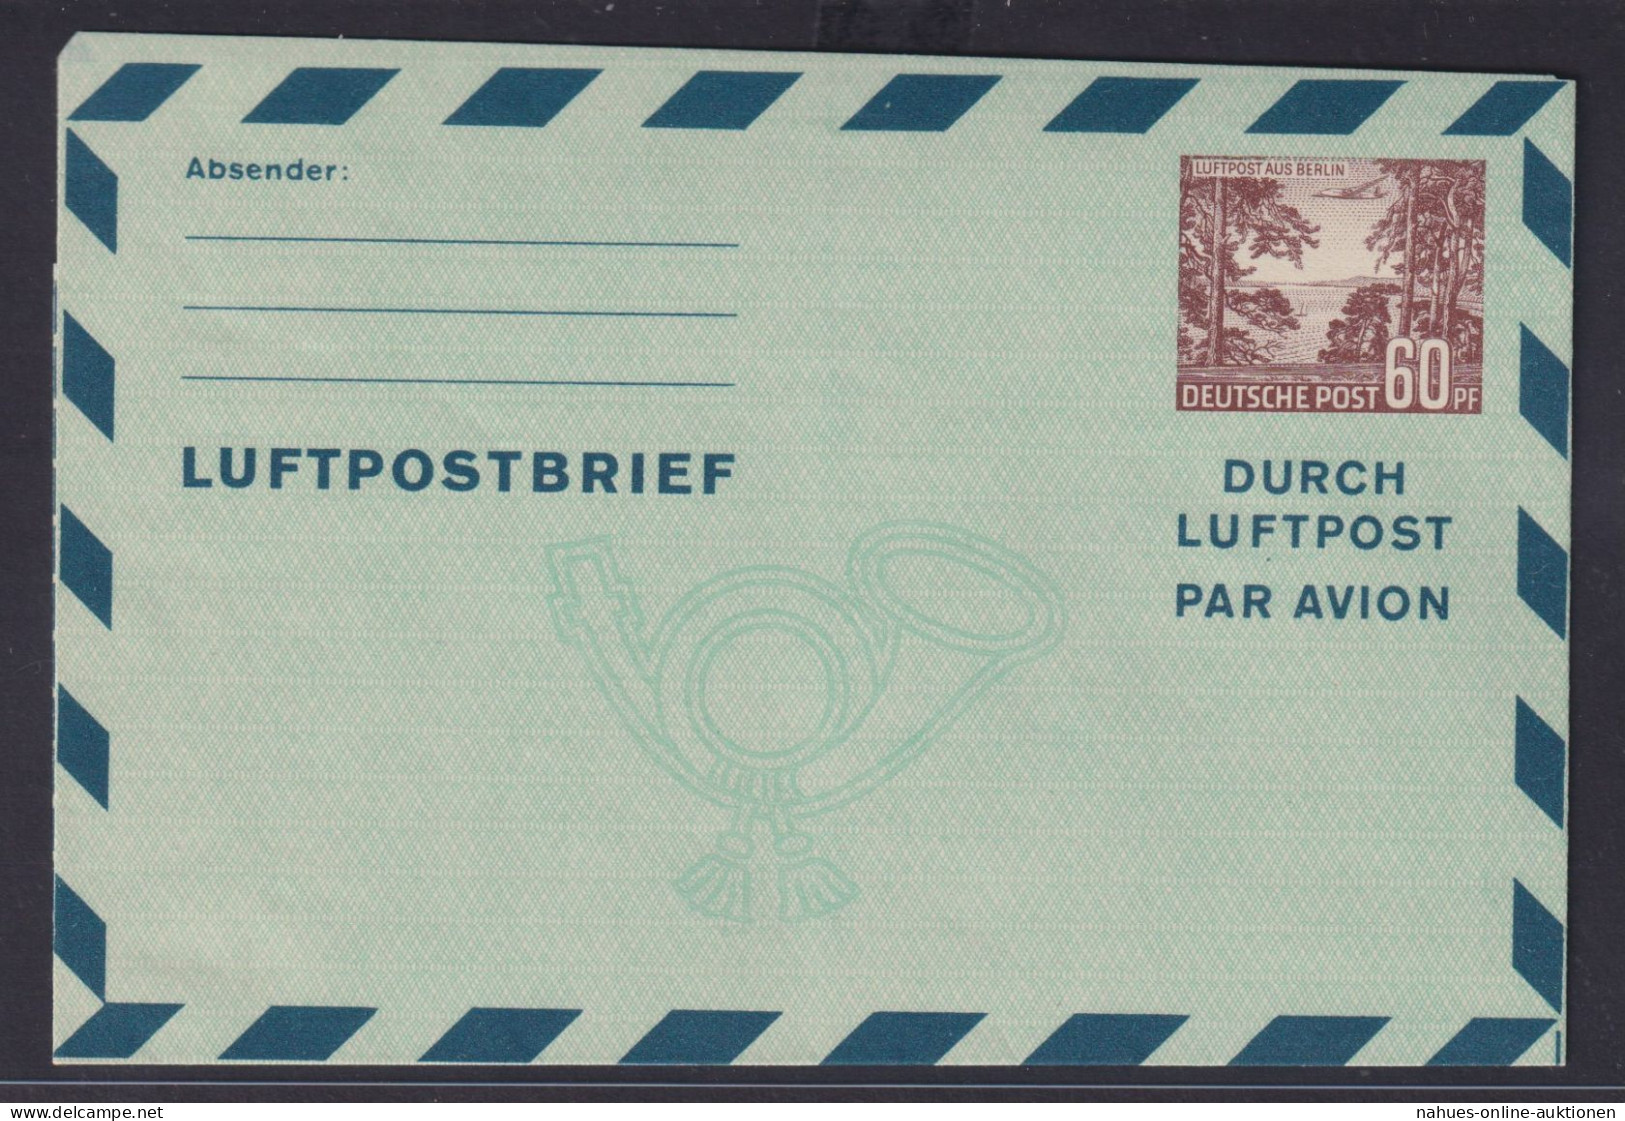 Berlin Brief Ganzsache Luftpostfaltbrief Aerogramm 60 Pfg. Bauten Kat.-Wert 60,- - Postales - Usados